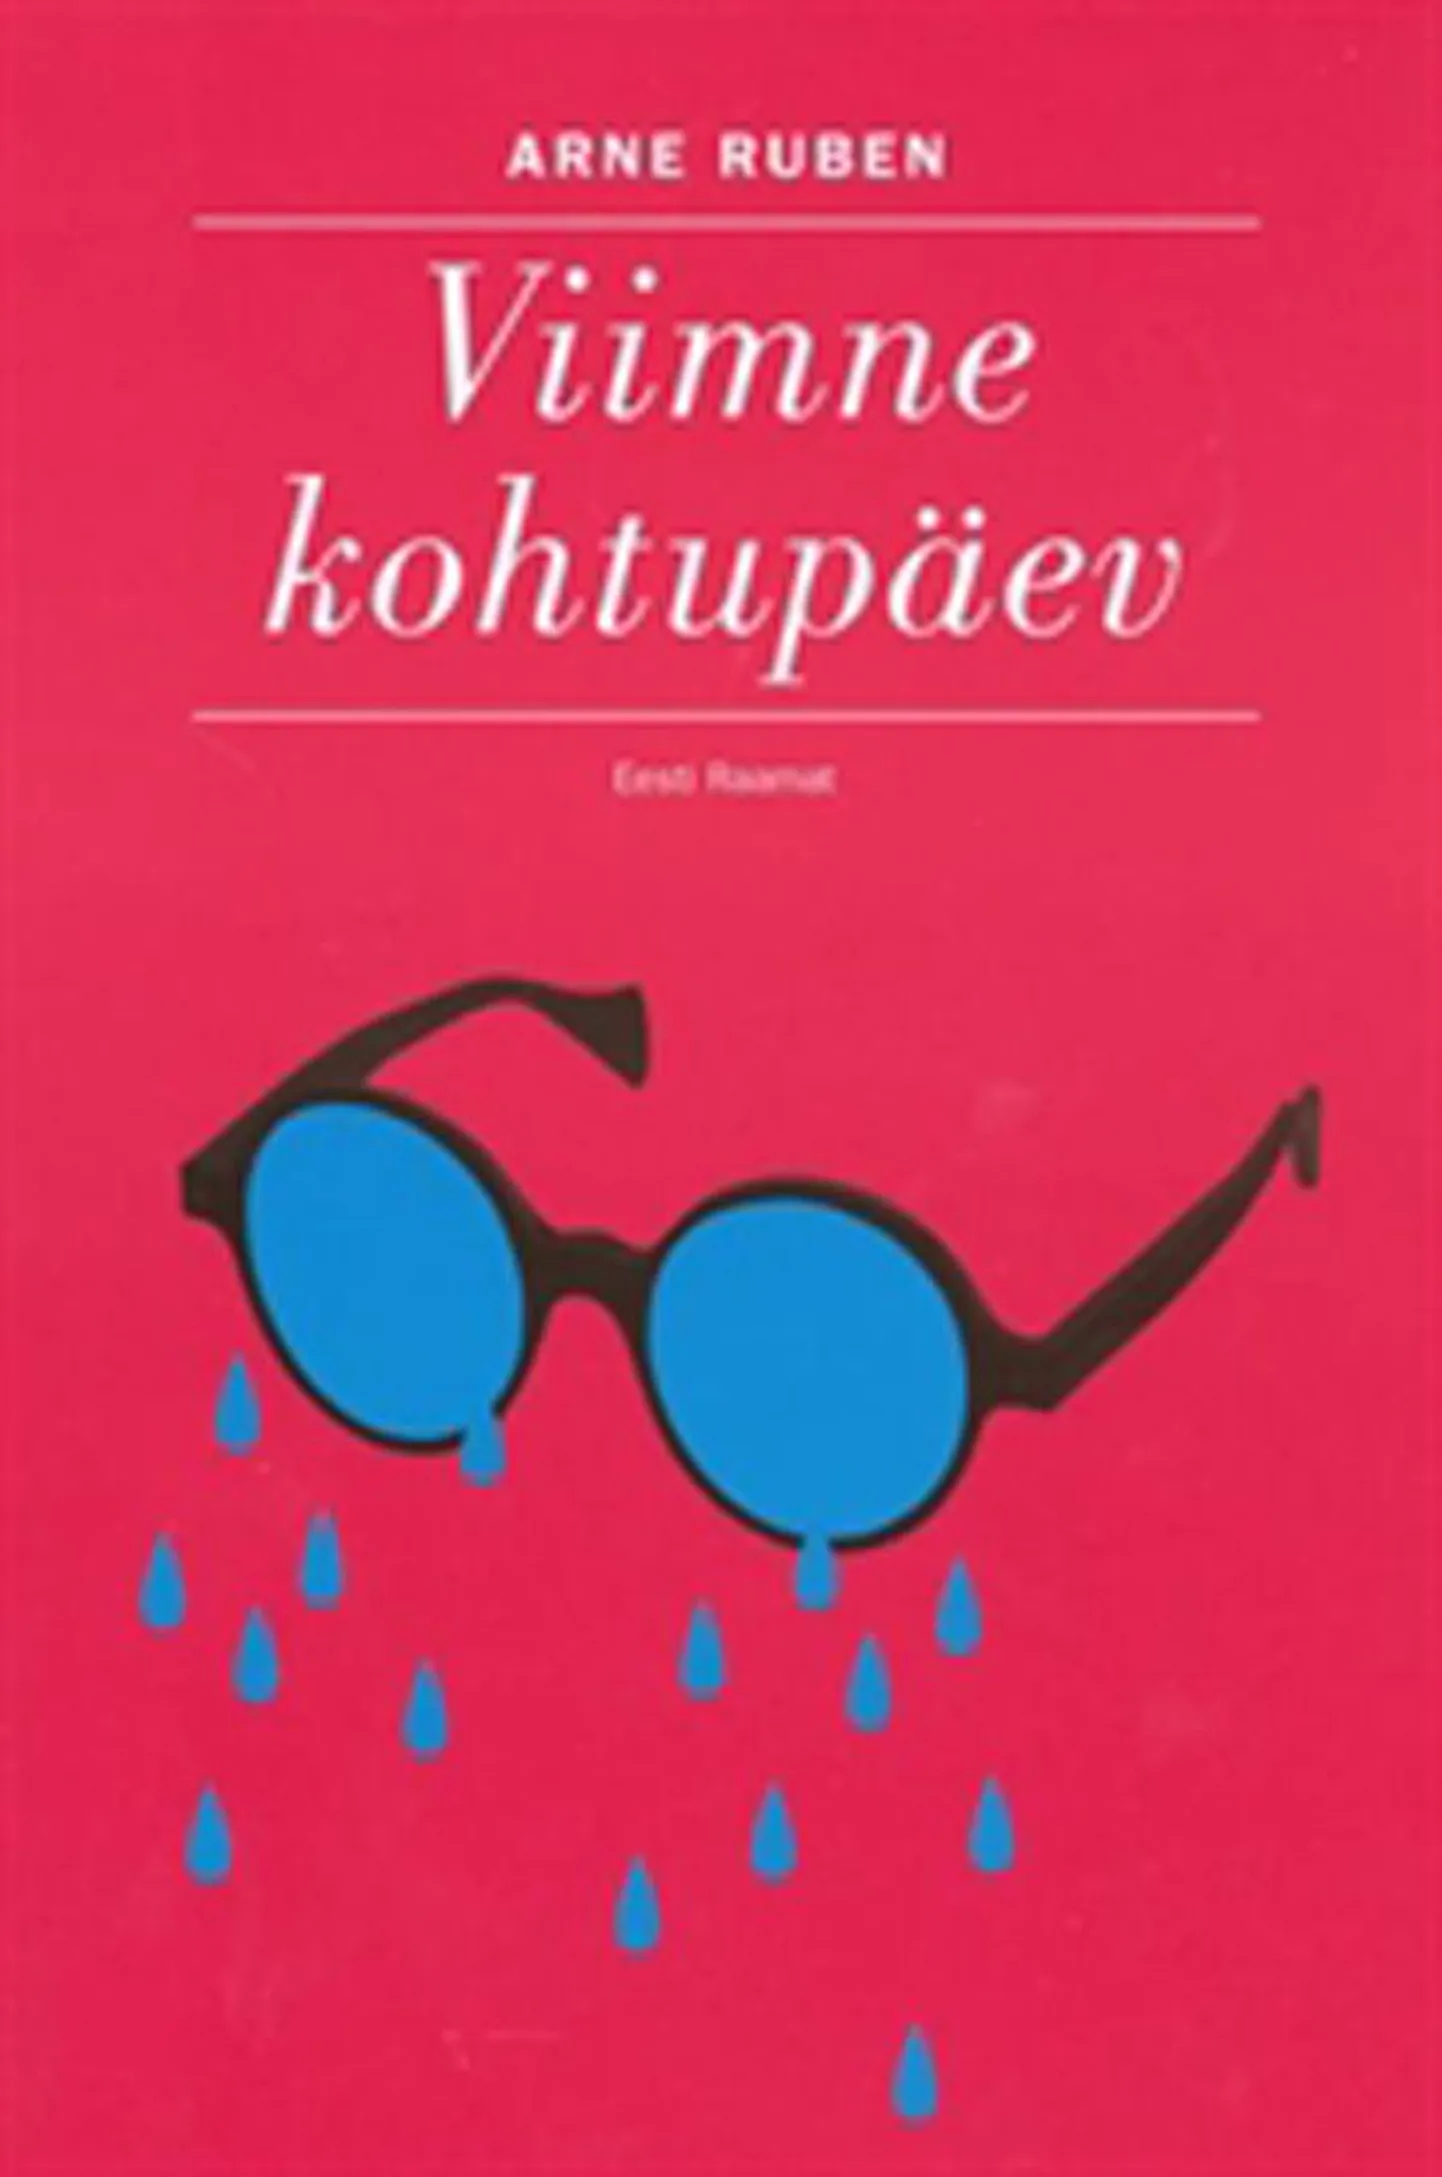 Raamat

Arne Ruben
«Viimne ­kohtupäev» 
Eesti Raamat, 2010, 150 lk